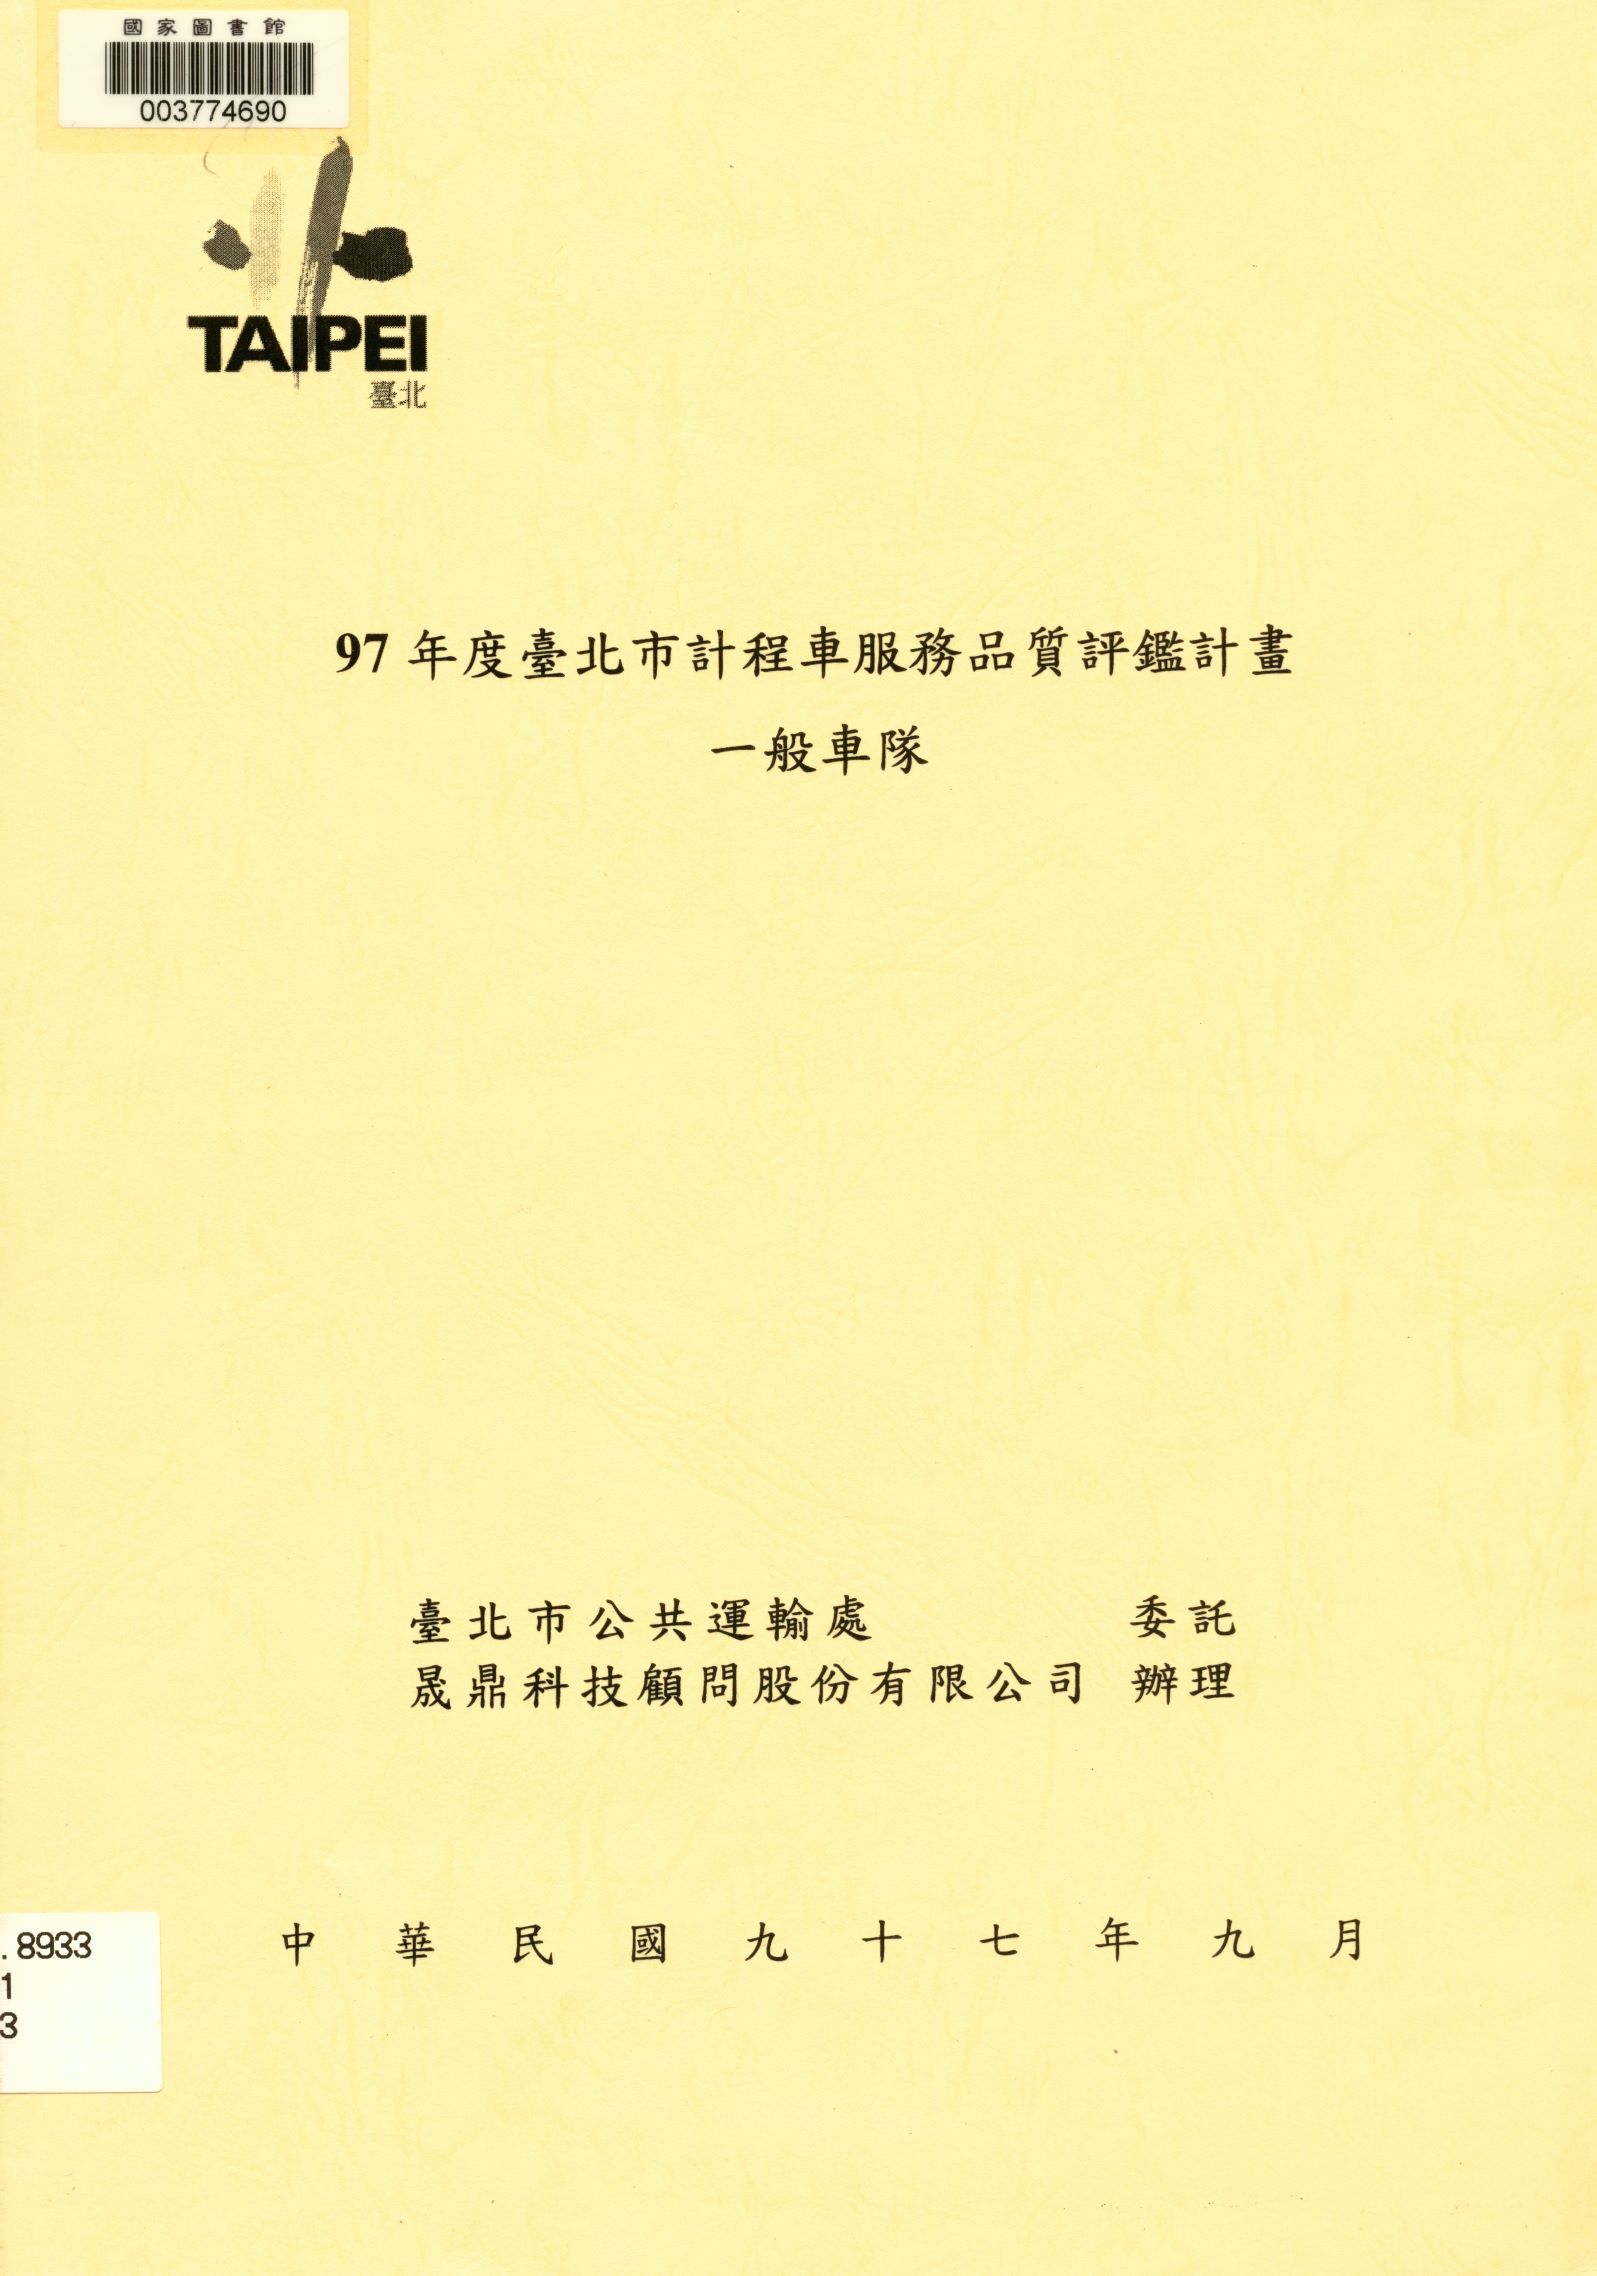 97年度臺北市計程車服務品質評鑑計畫-一般車隊